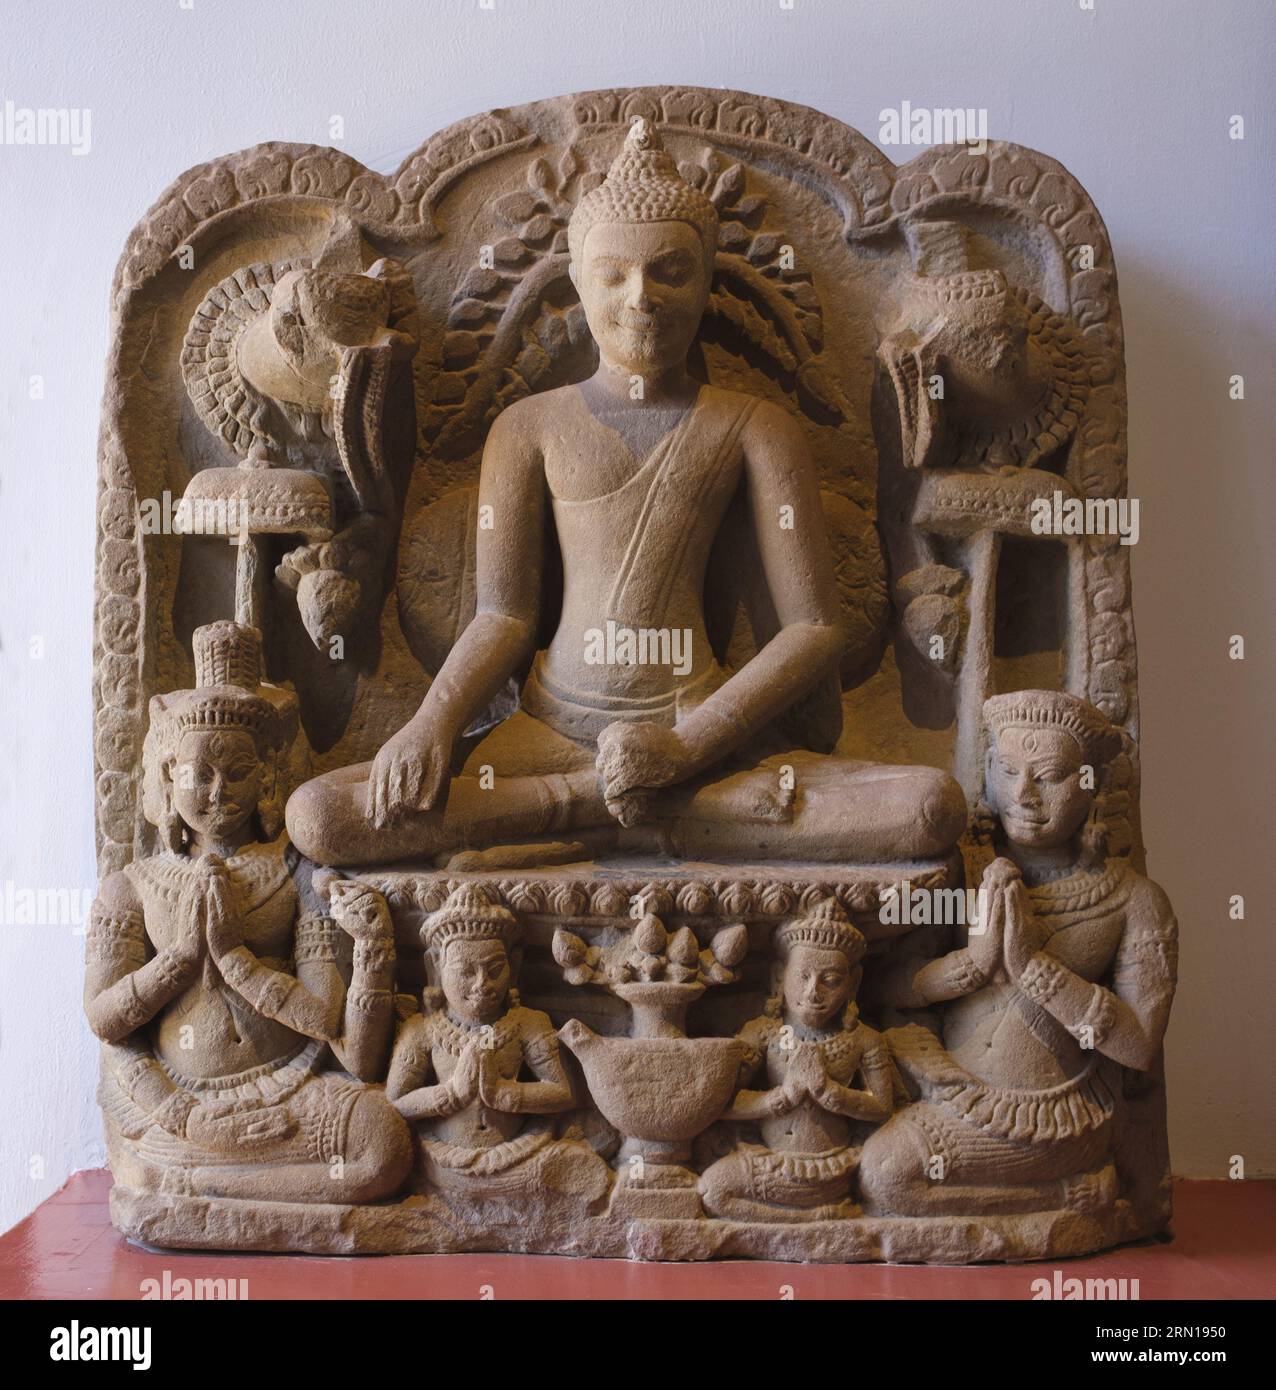 Cambogia: Un bassorilievo in pietra arenaria del XIII secolo del Buddha e dei fedeli, originario del Bayon, Angkor Thom, ora nel Museo Nazionale della Cambogia, Phnom Penh. Il Museo Nazionale, ospitato in un padiglione rosso costruito nel 1918, ospita una collezione di arte Khmer che include alcuni dei migliori pezzi esistenti. Le mostre includono una statua del vi secolo di Vishnu, una statua di Shiva del IX secolo e la famosa testa scolpita di Jayavarman VII in posa meditativa. Particolarmente suggestivo è il busto danneggiato di un Vishnu reclinabile che un tempo faceva parte di una massiccia statua di bronzo trovata presso il Mebon occidentale. Foto Stock